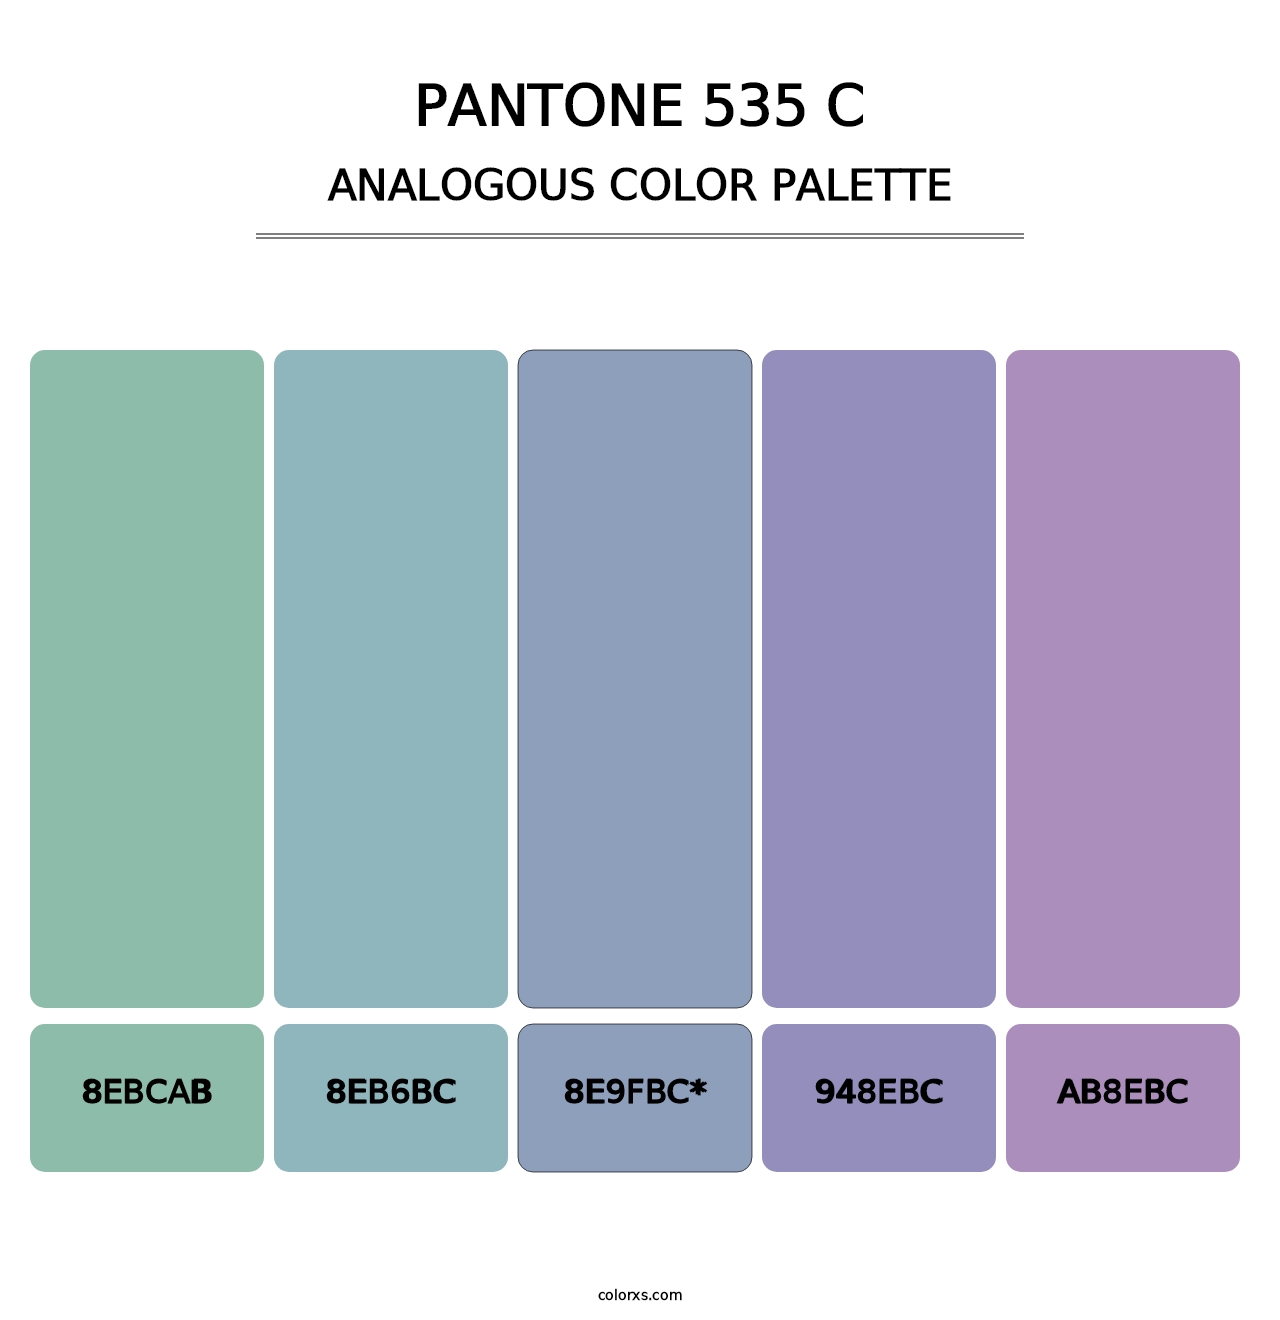 PANTONE 535 C - Analogous Color Palette